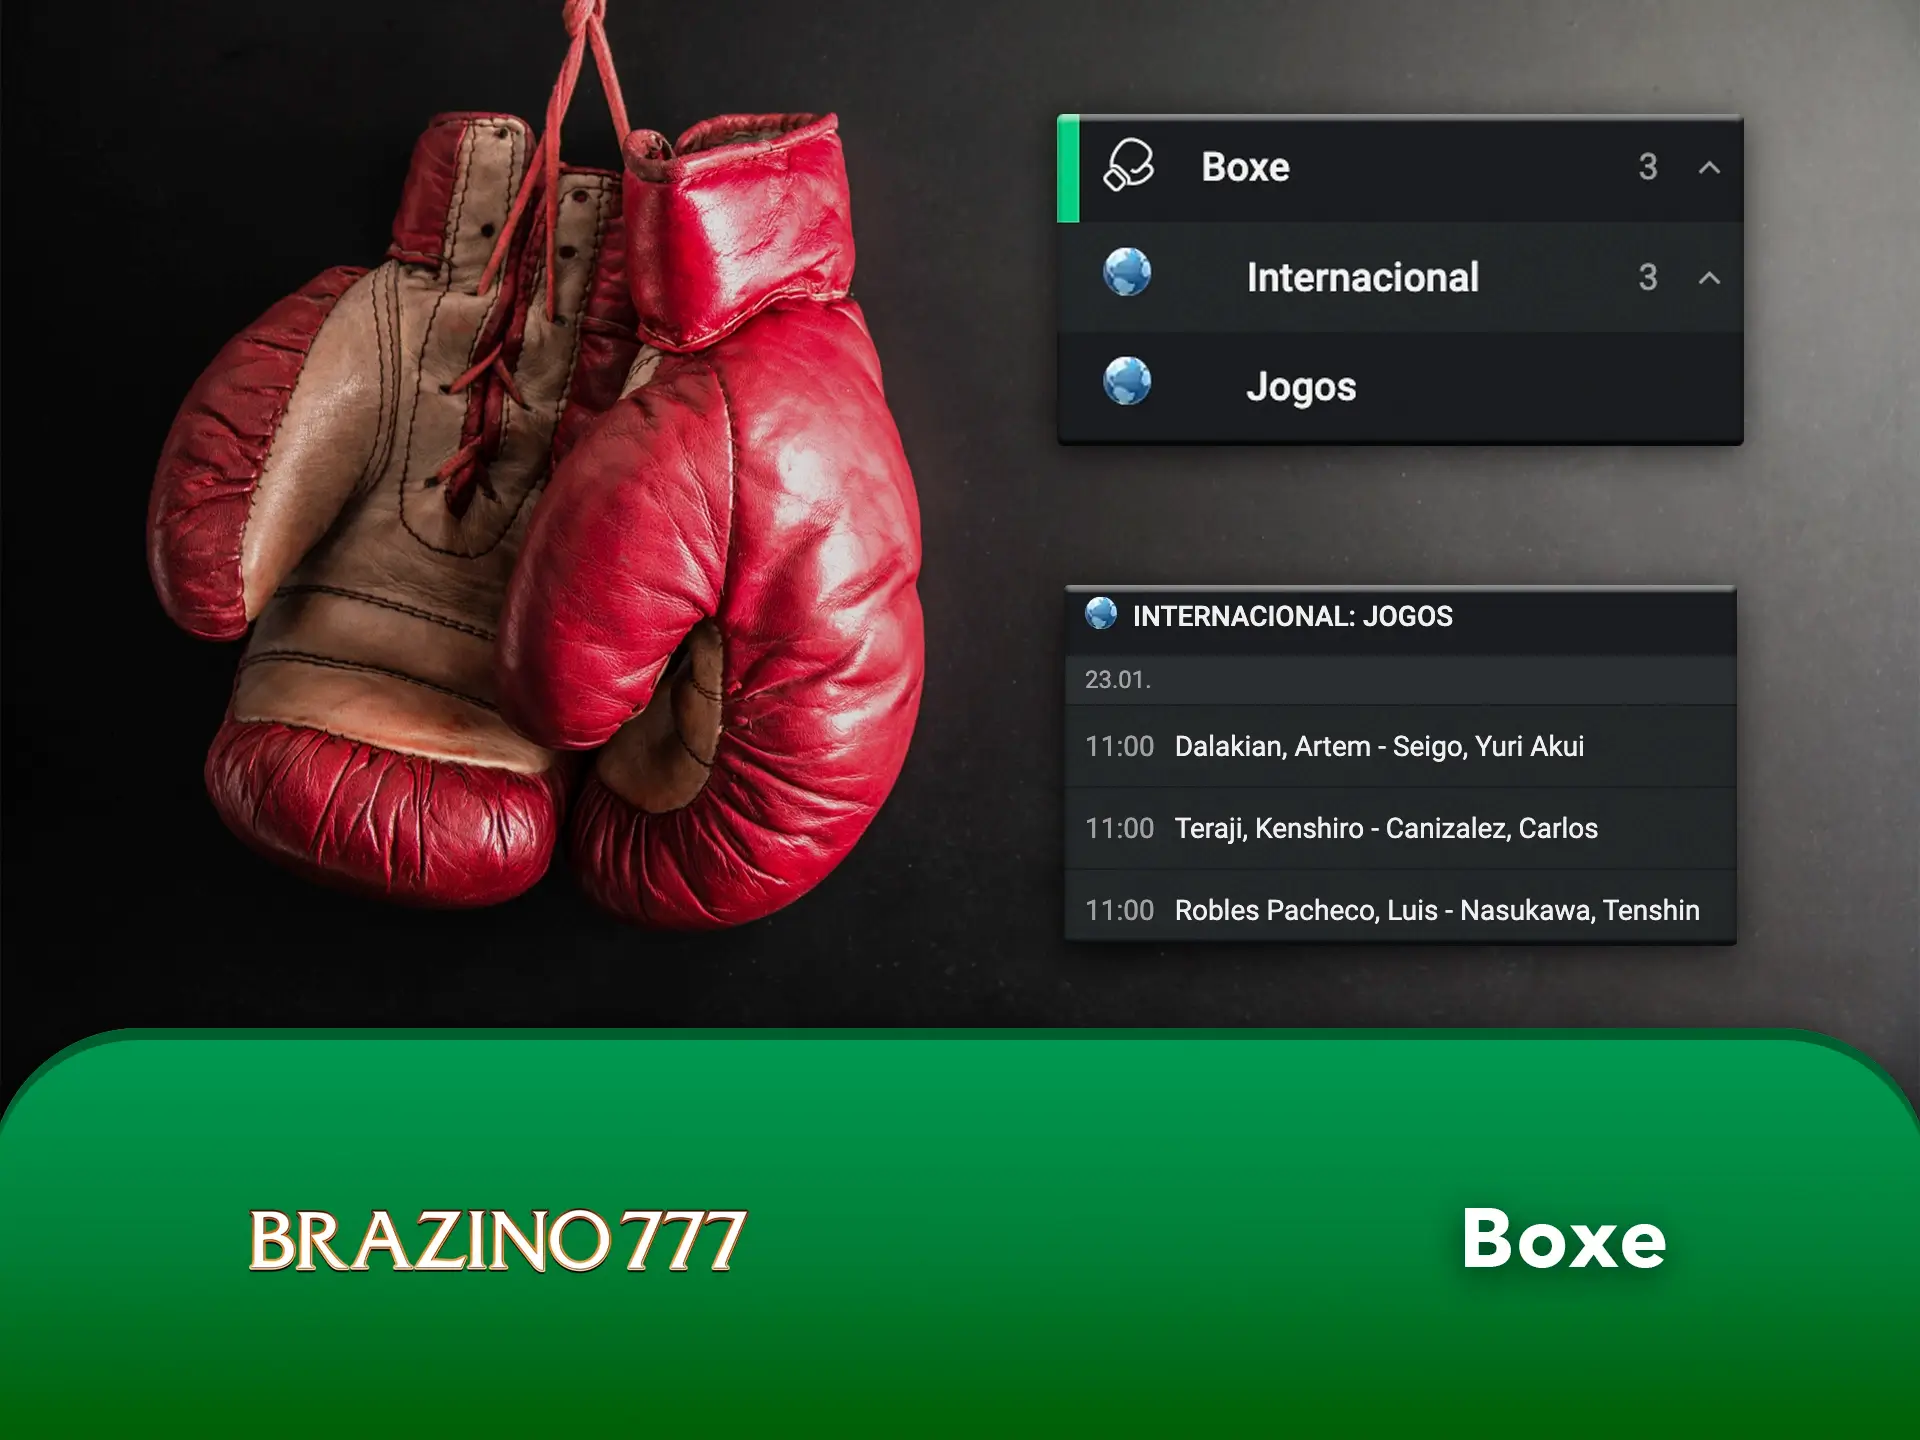 Tome as decisões certas ao apostar no boxe no Brazino777.